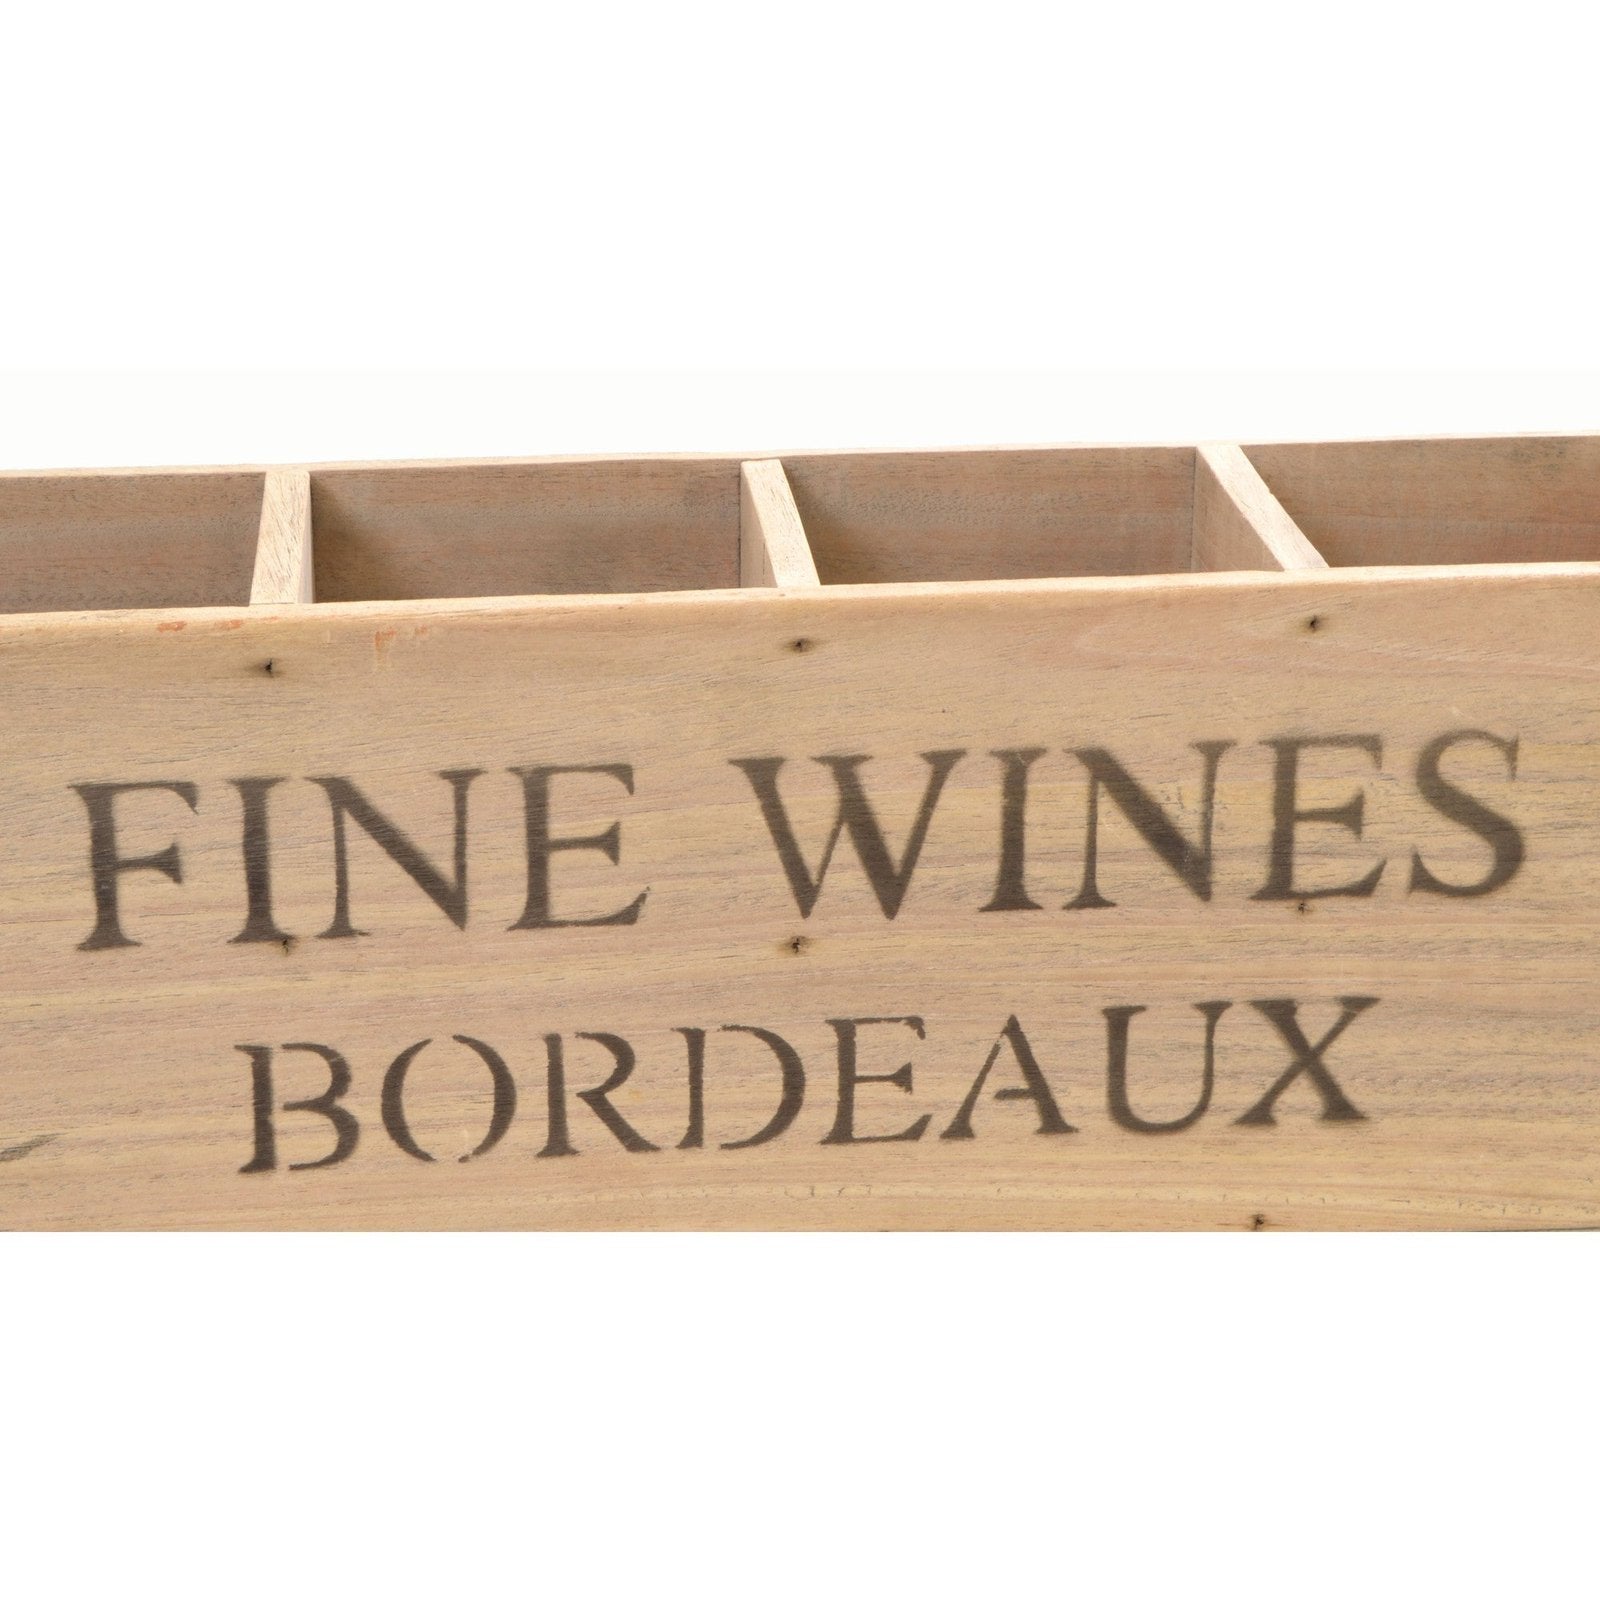 Vintage Bordeaux 4 Bottle Fine Wines Box